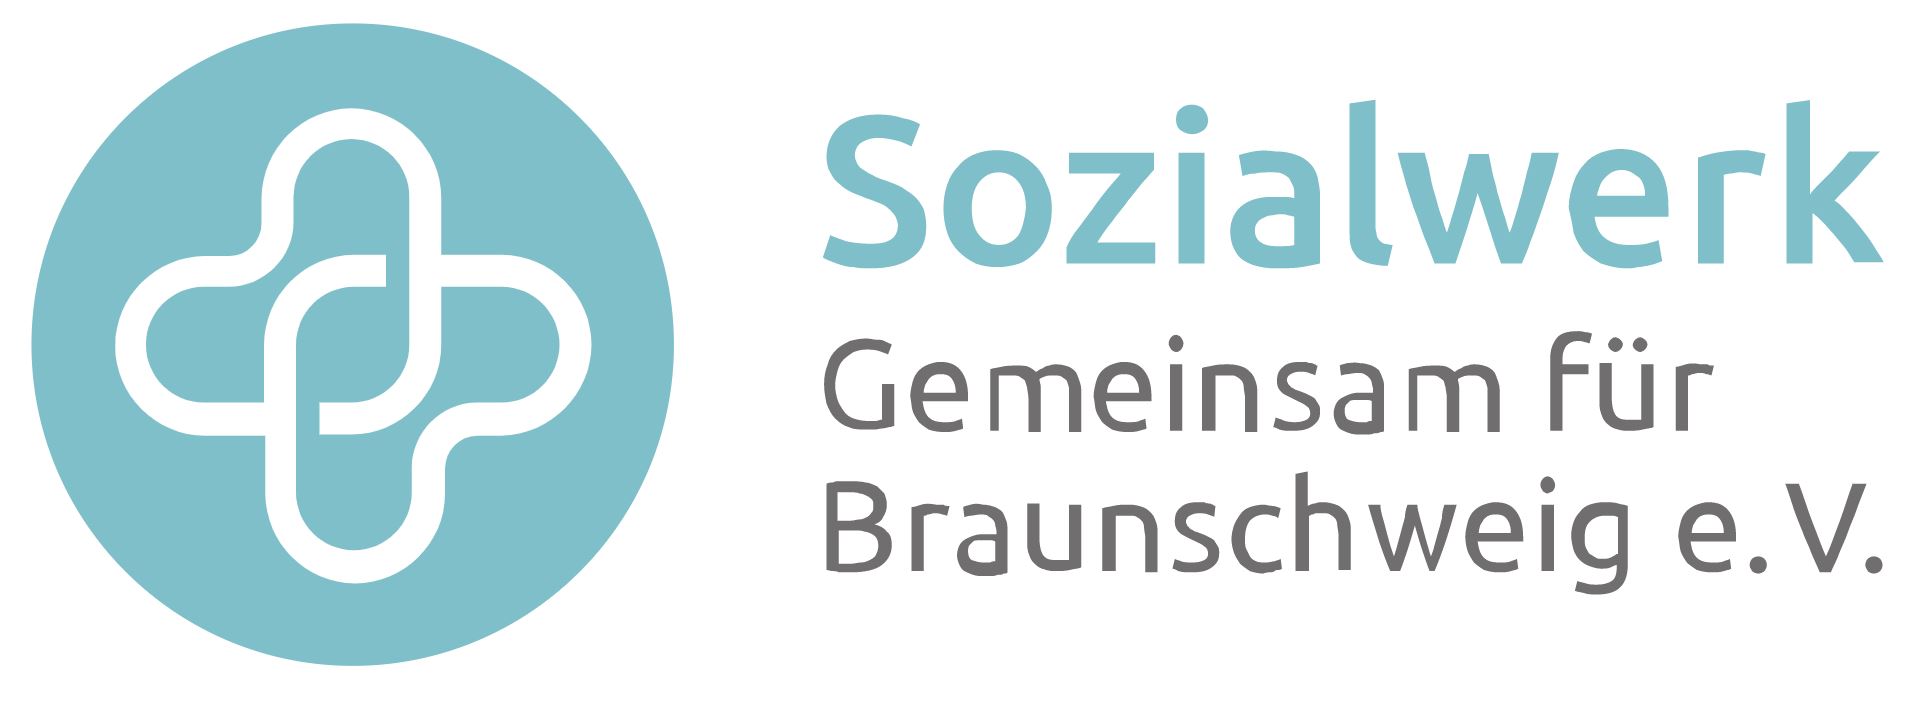 Unter dem Schirm des „Sozialwerk Gemeinsam für Braunschweig e.V.“ ist es unserem Pflegedienst ein besonderes Herzensanliegen, Sie zu Hause zu unterstützen. Behütet zu Hause!